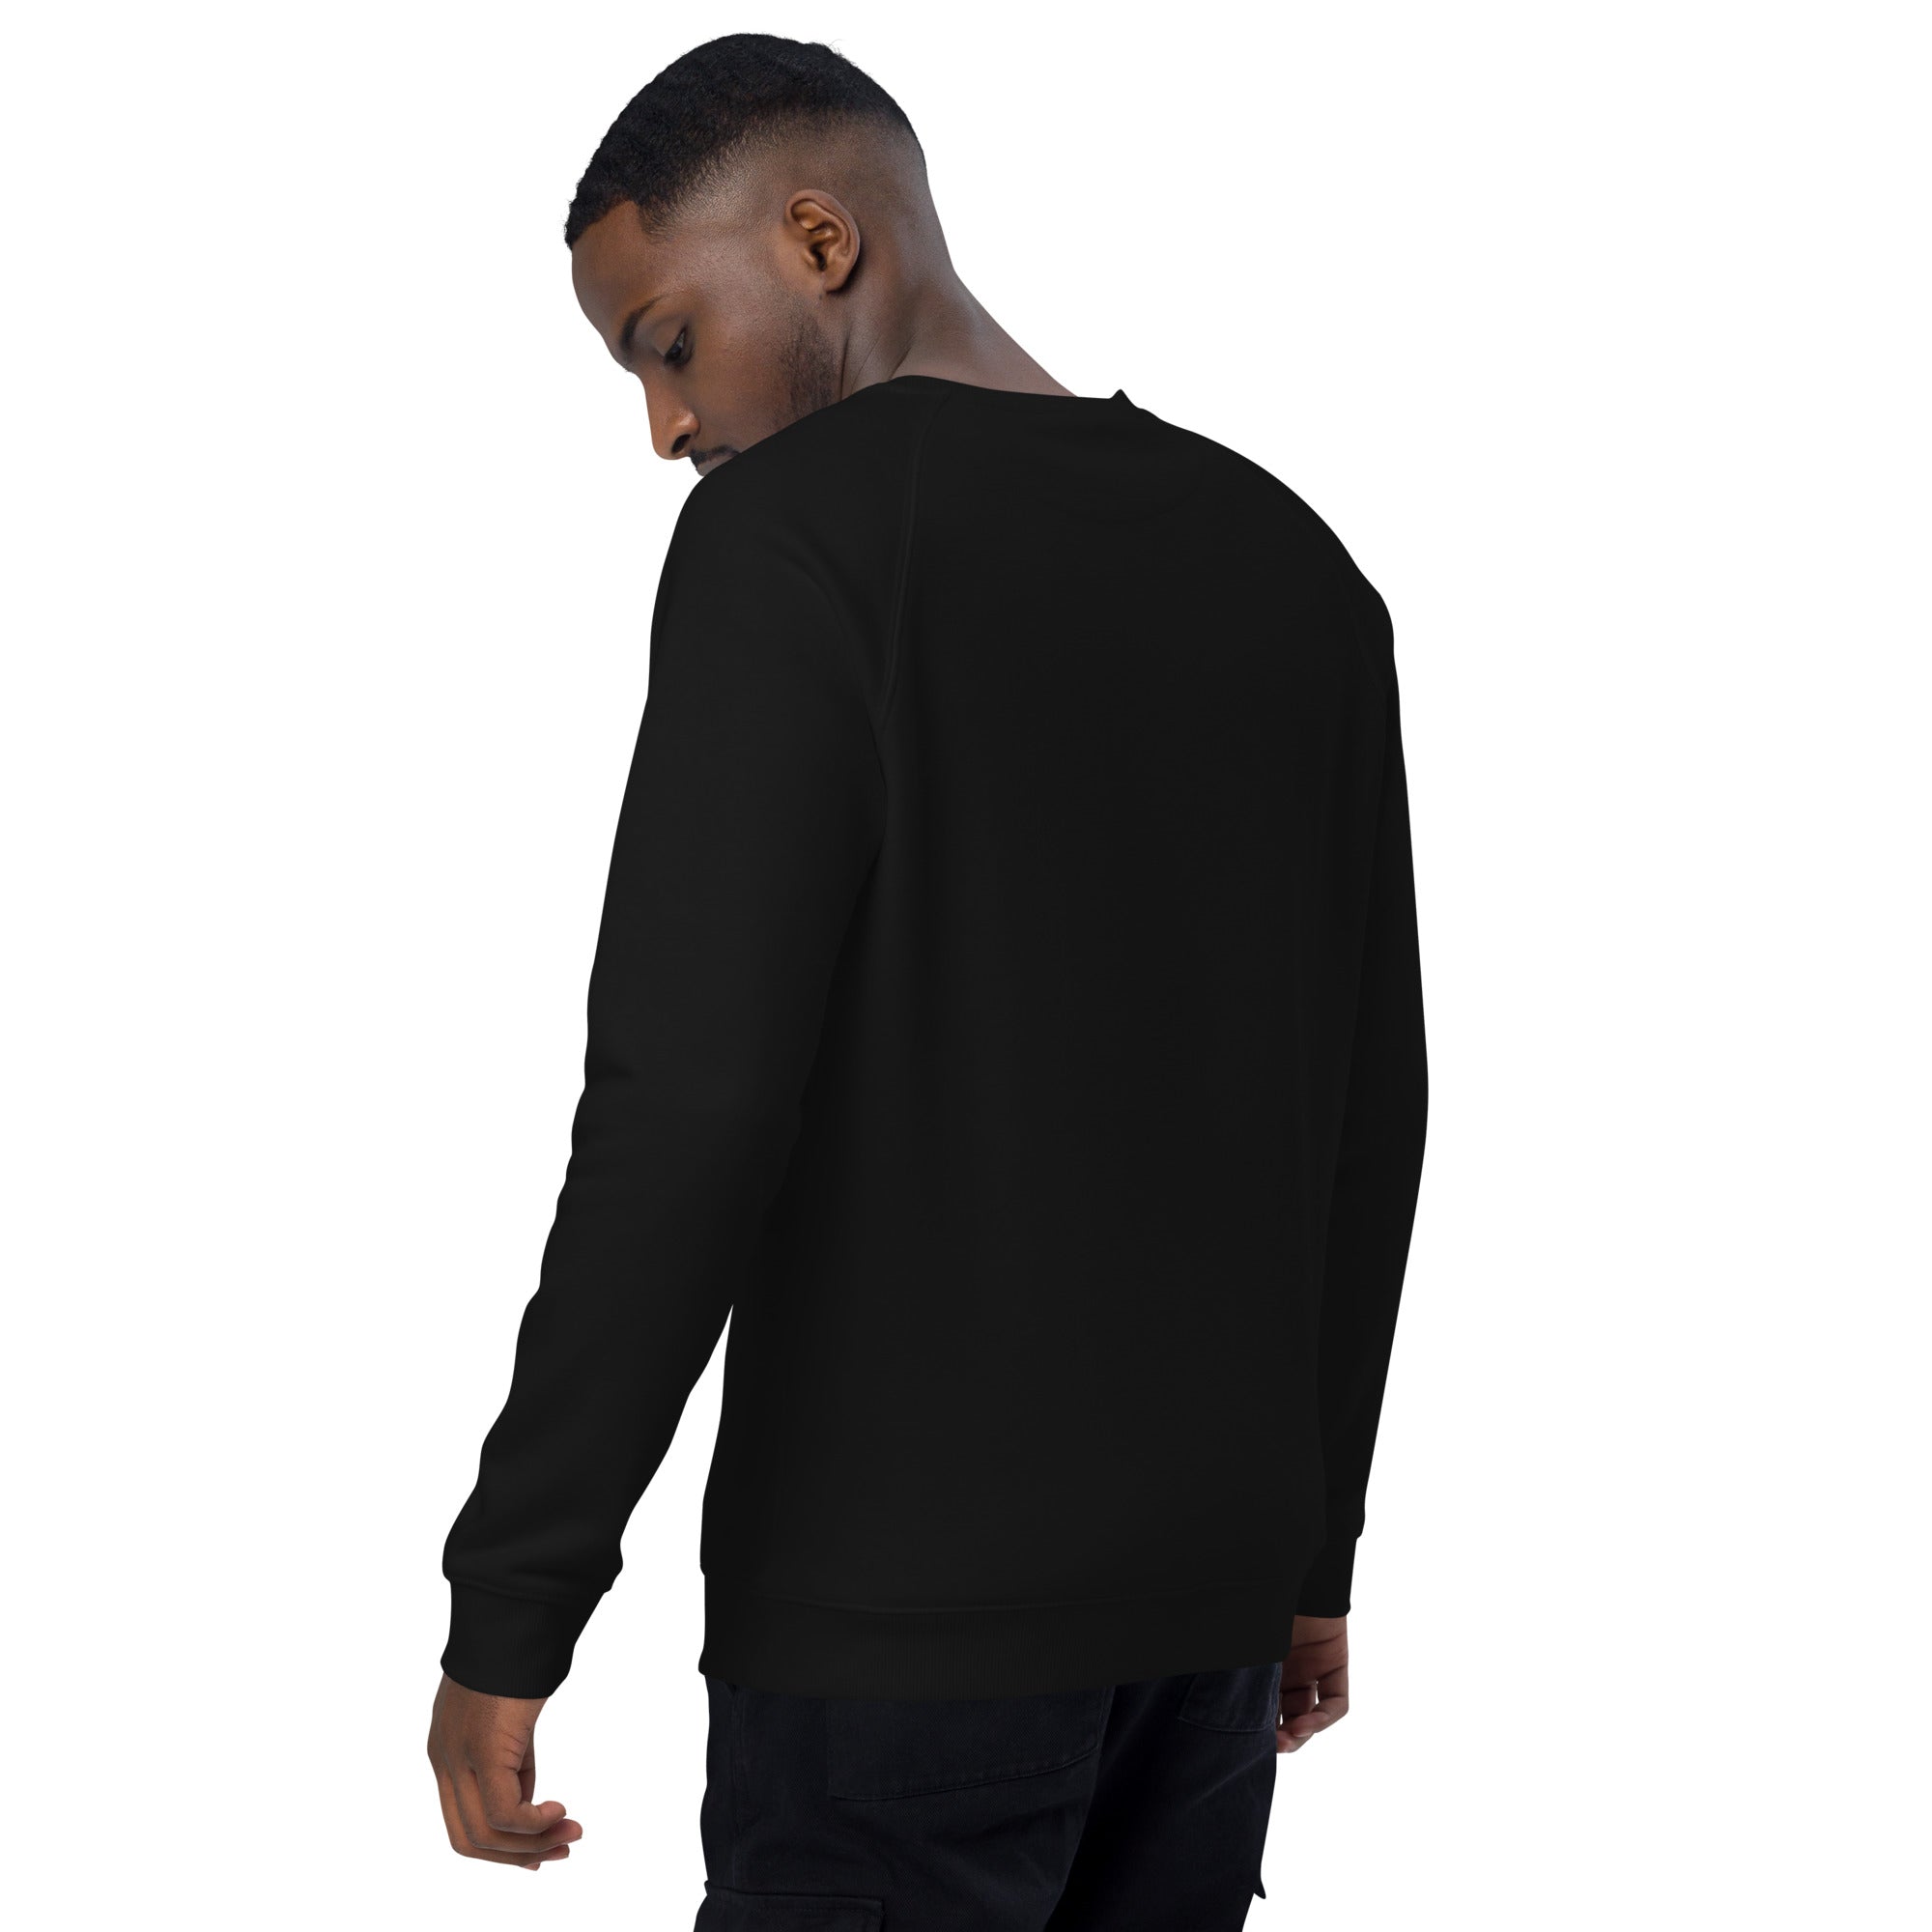 A/F W Logo - Black Unisex organic raglan sweatshirt